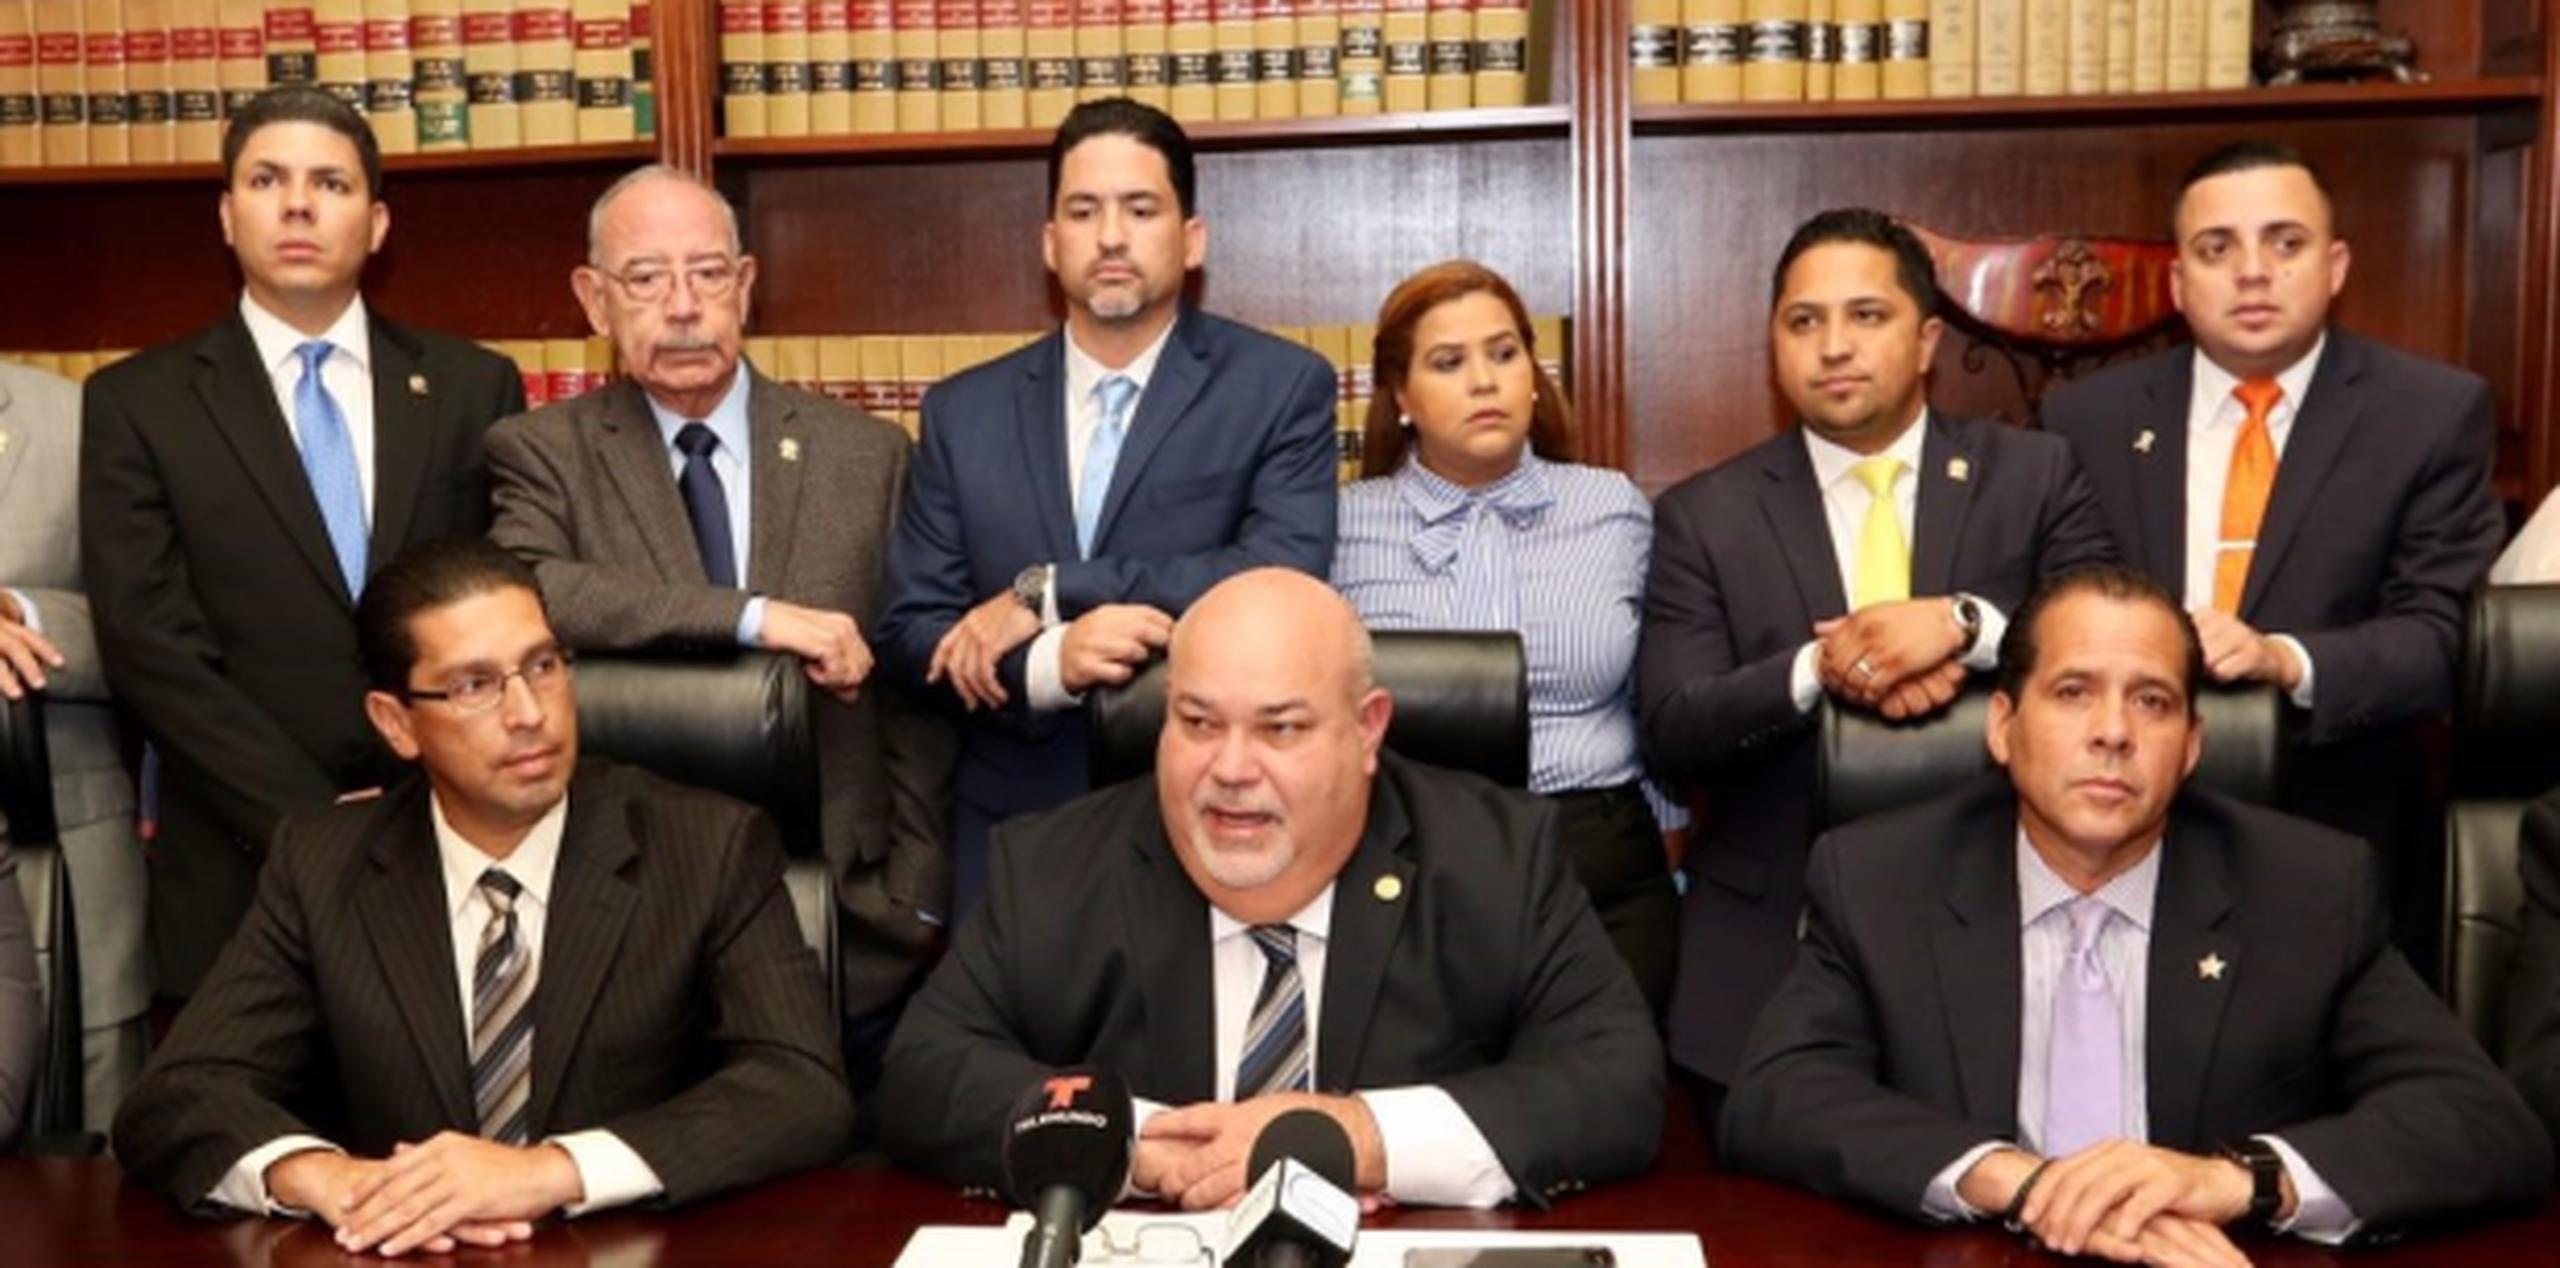 El presidente de la Cámara de Representantes, Carlos "Johnny" Méndez, sostuvo que la actual administración y la Asamblea Legislativa han hecho todo lo que ha solicitado la Junta para satisfacer sus inquietudes y demandas. (Suministrada)